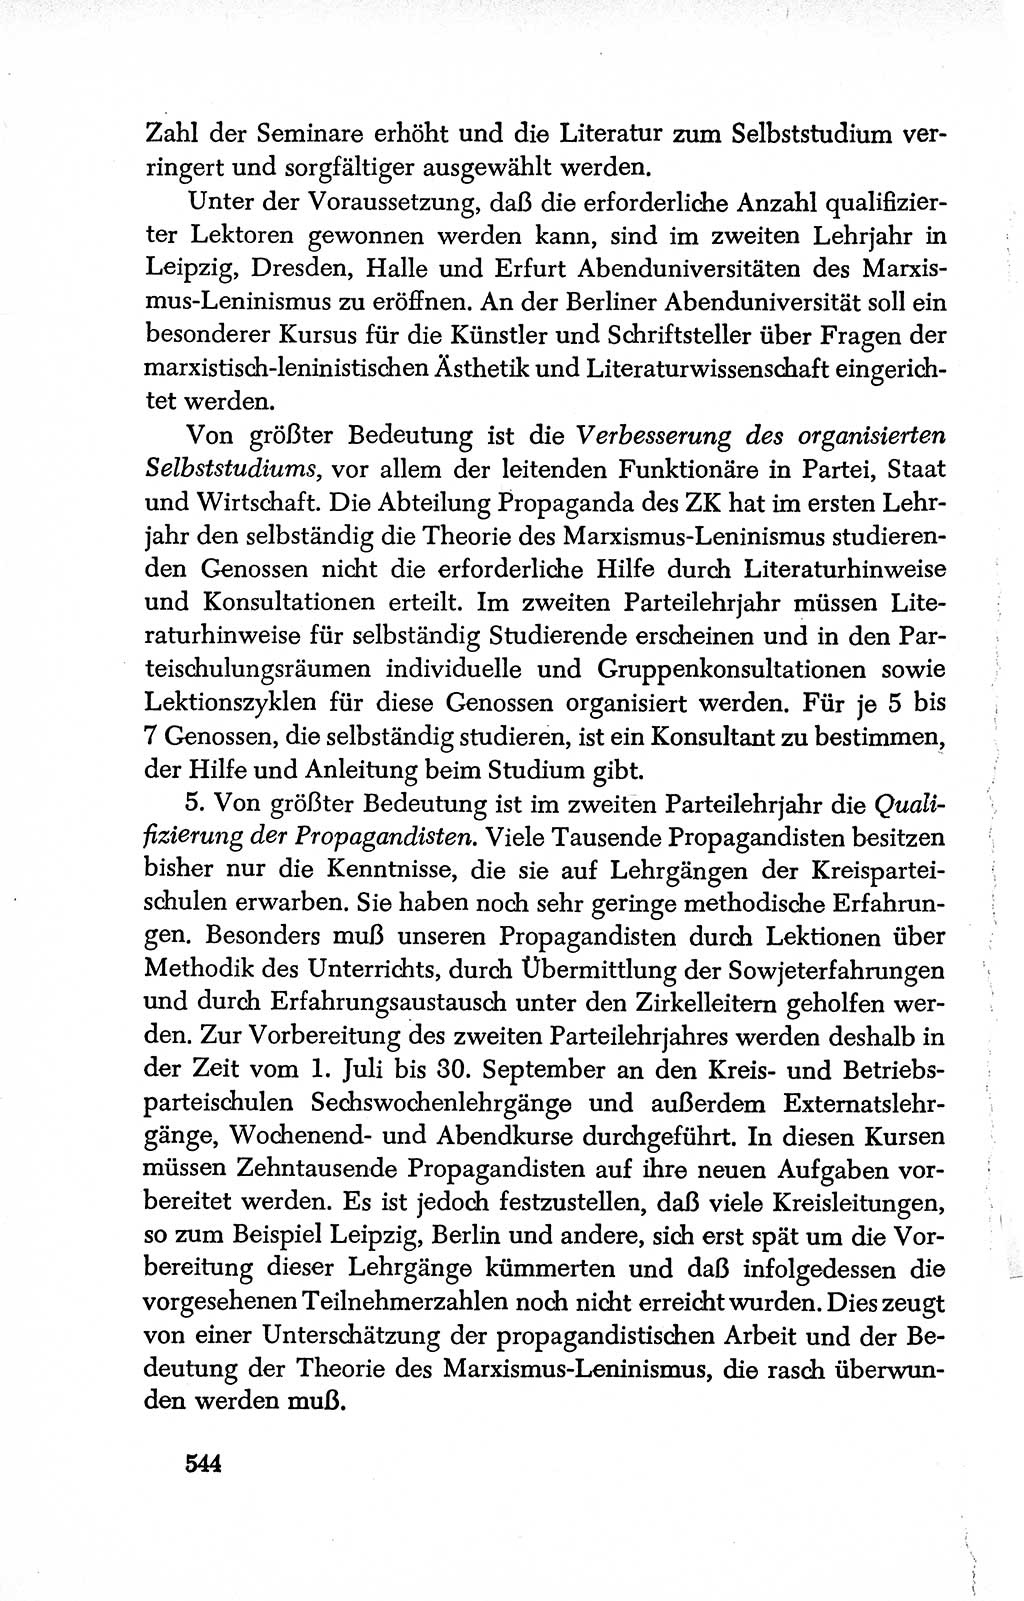 Dokumente der Sozialistischen Einheitspartei Deutschlands (SED) [Deutsche Demokratische Republik (DDR)] 1950-1952, Seite 544 (Dok. SED DDR 1950-1952, S. 544)